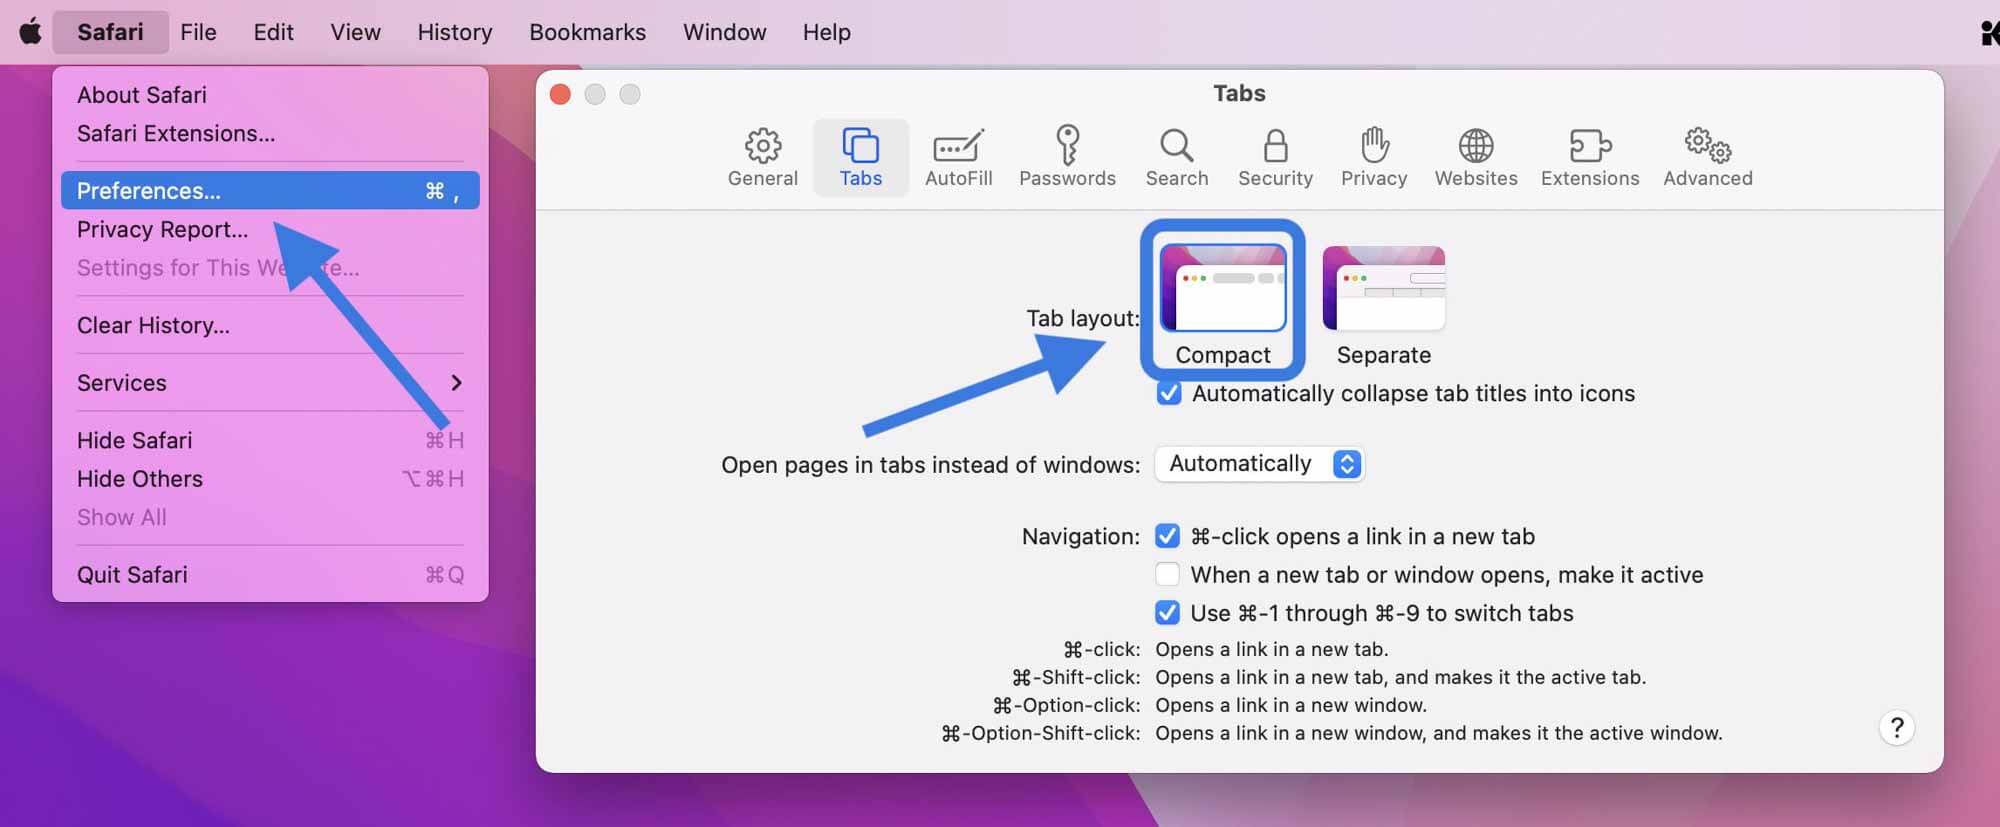 Как работает Safari в macOS Monterey - пошаговое руководство выберите новый современный дизайн